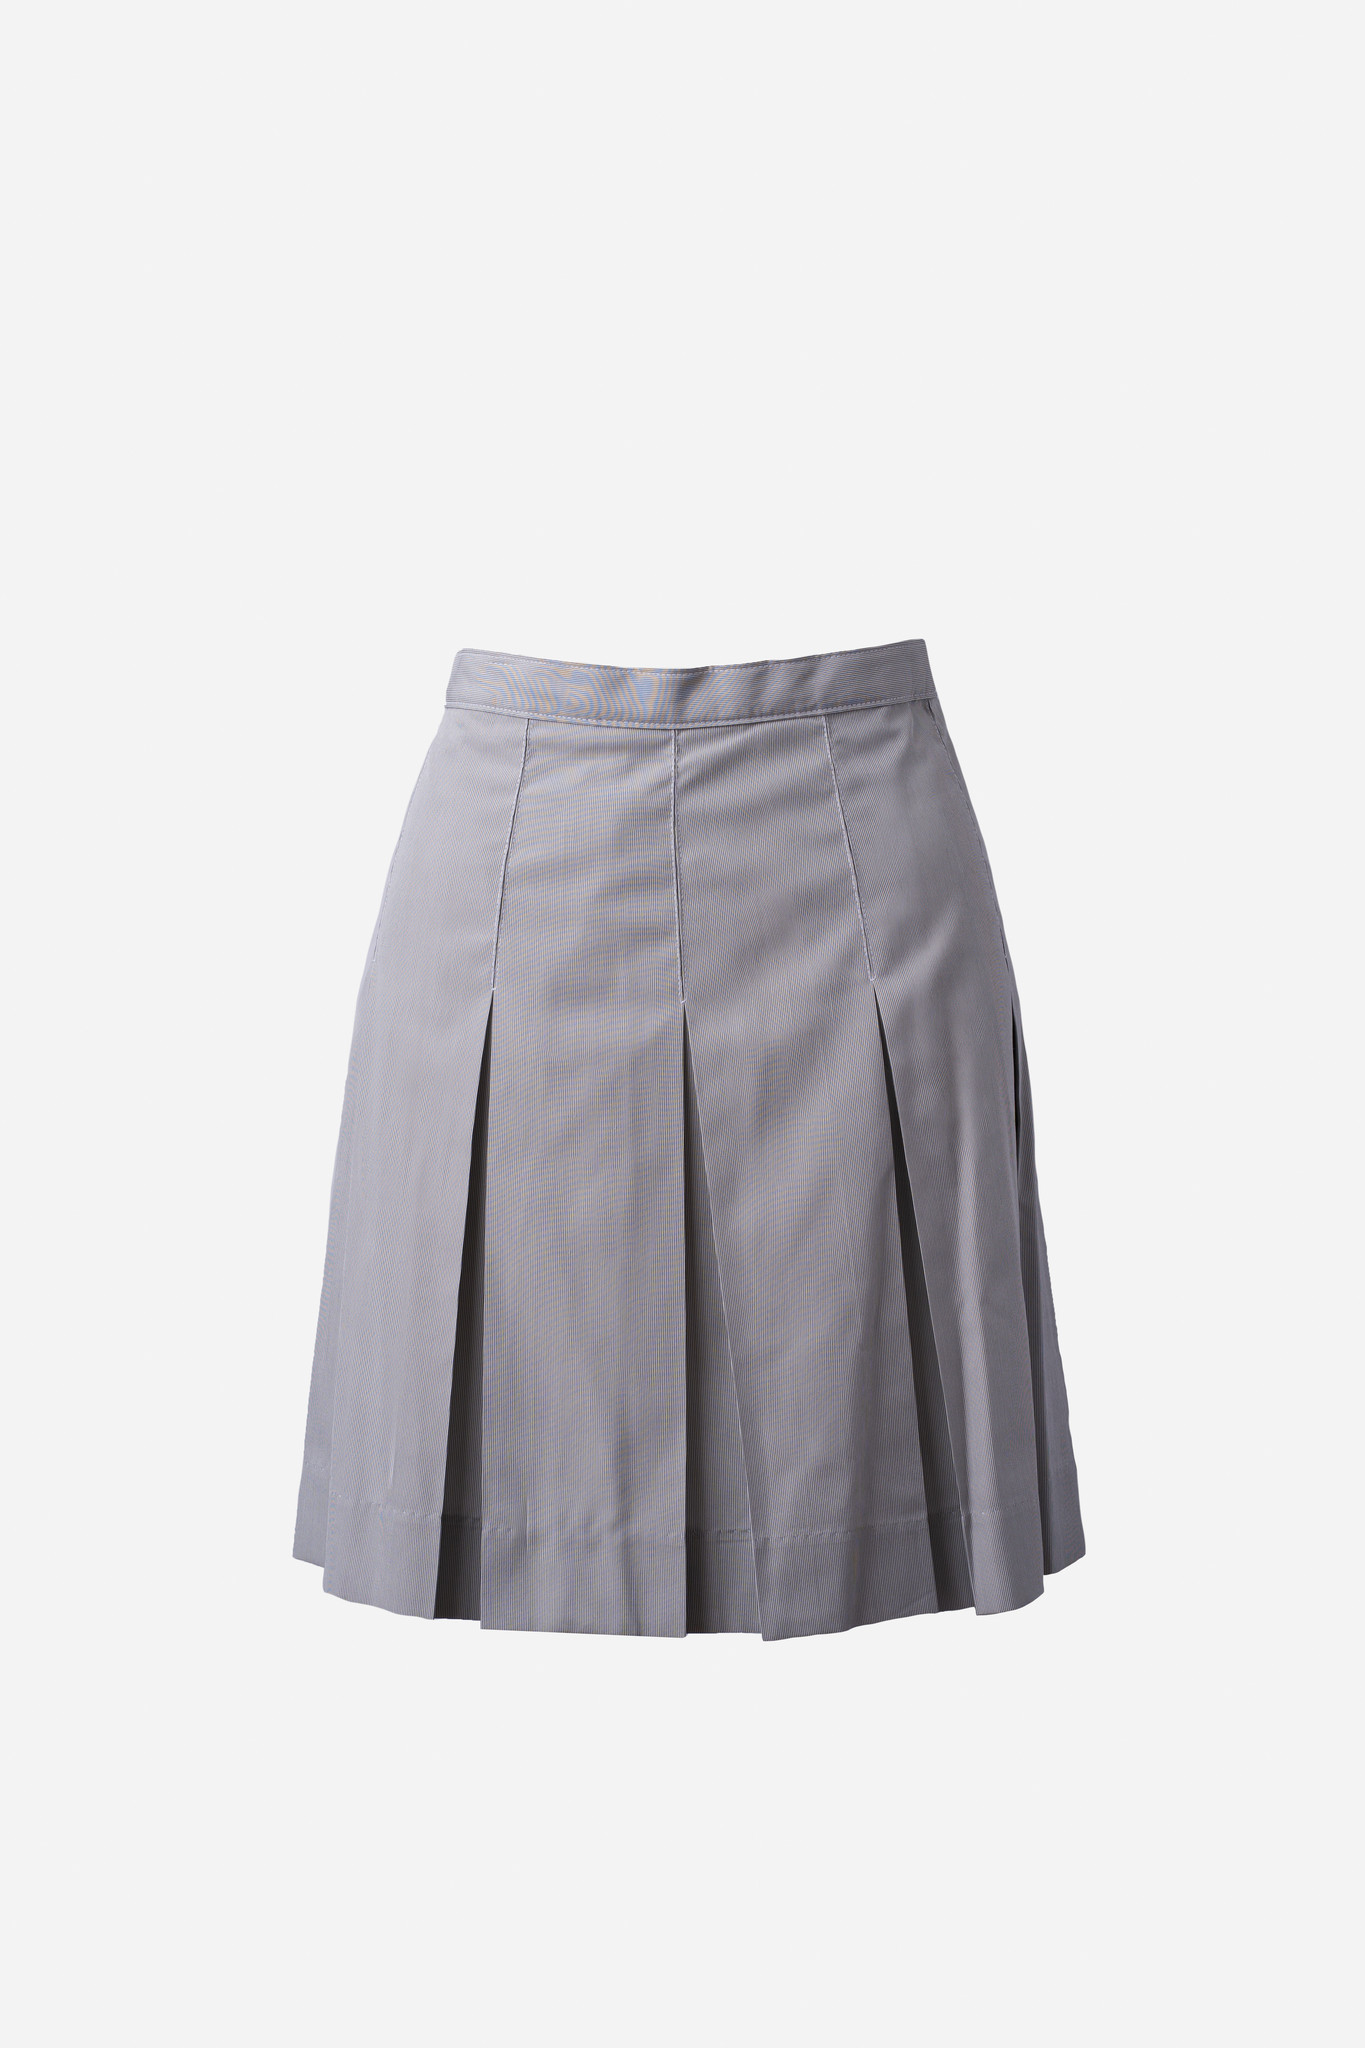 RAMONA Ramona Pinfeather Skirt